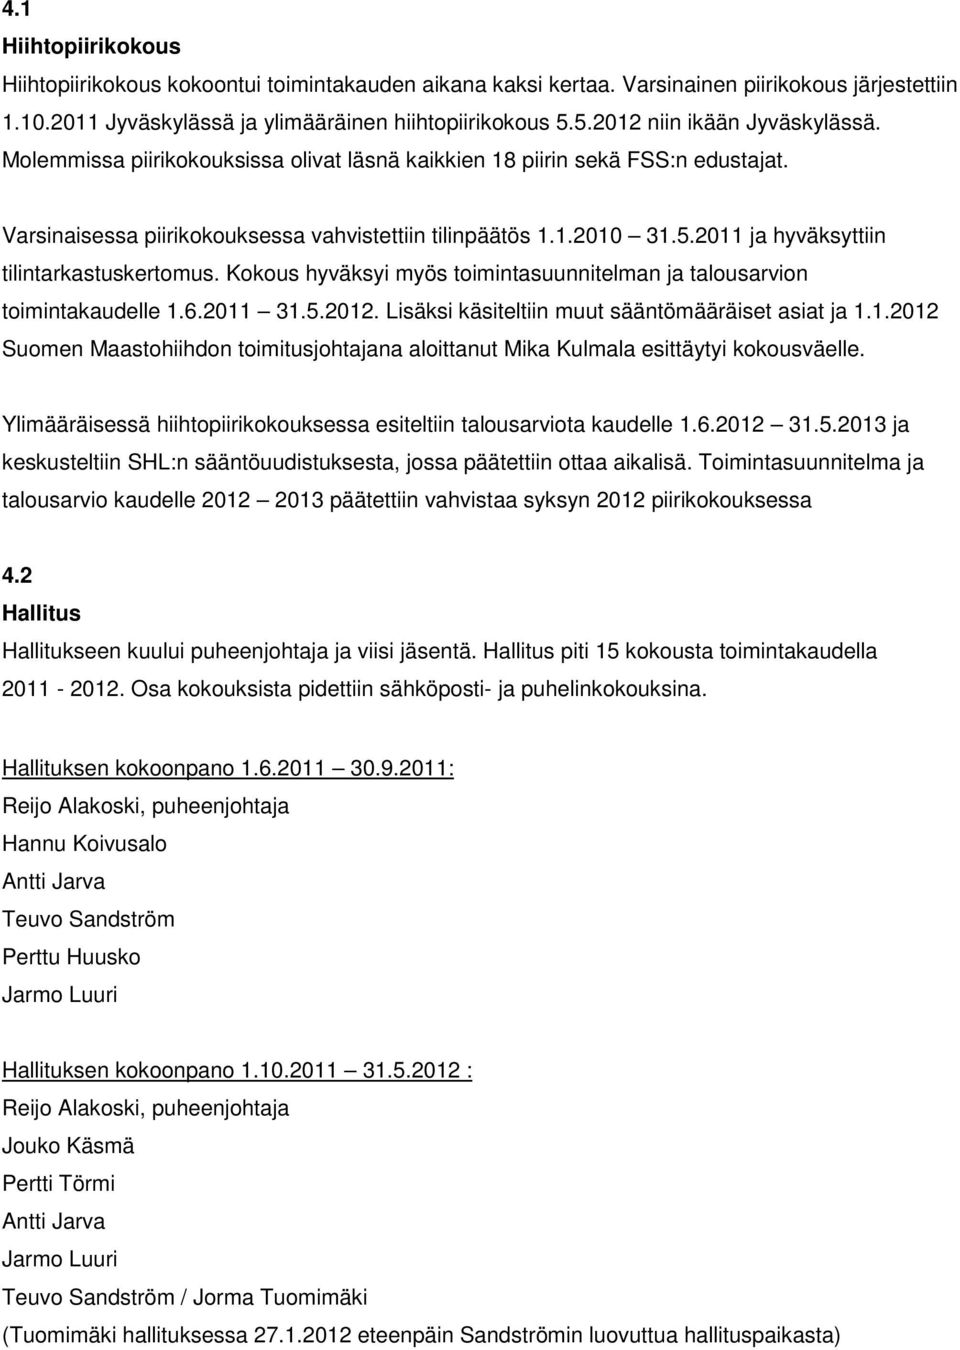 Kokous hyväksyi myös toimintasuunnitelman ja talousarvion toimintakaudelle 1.6.2011 31.5.2012. Lisäksi käsiteltiin muut sääntömääräiset asiat ja 1.1.2012 Suomen Maastohiihdon toimitusjohtajana aloittanut Mika Kulmala esittäytyi kokousväelle.